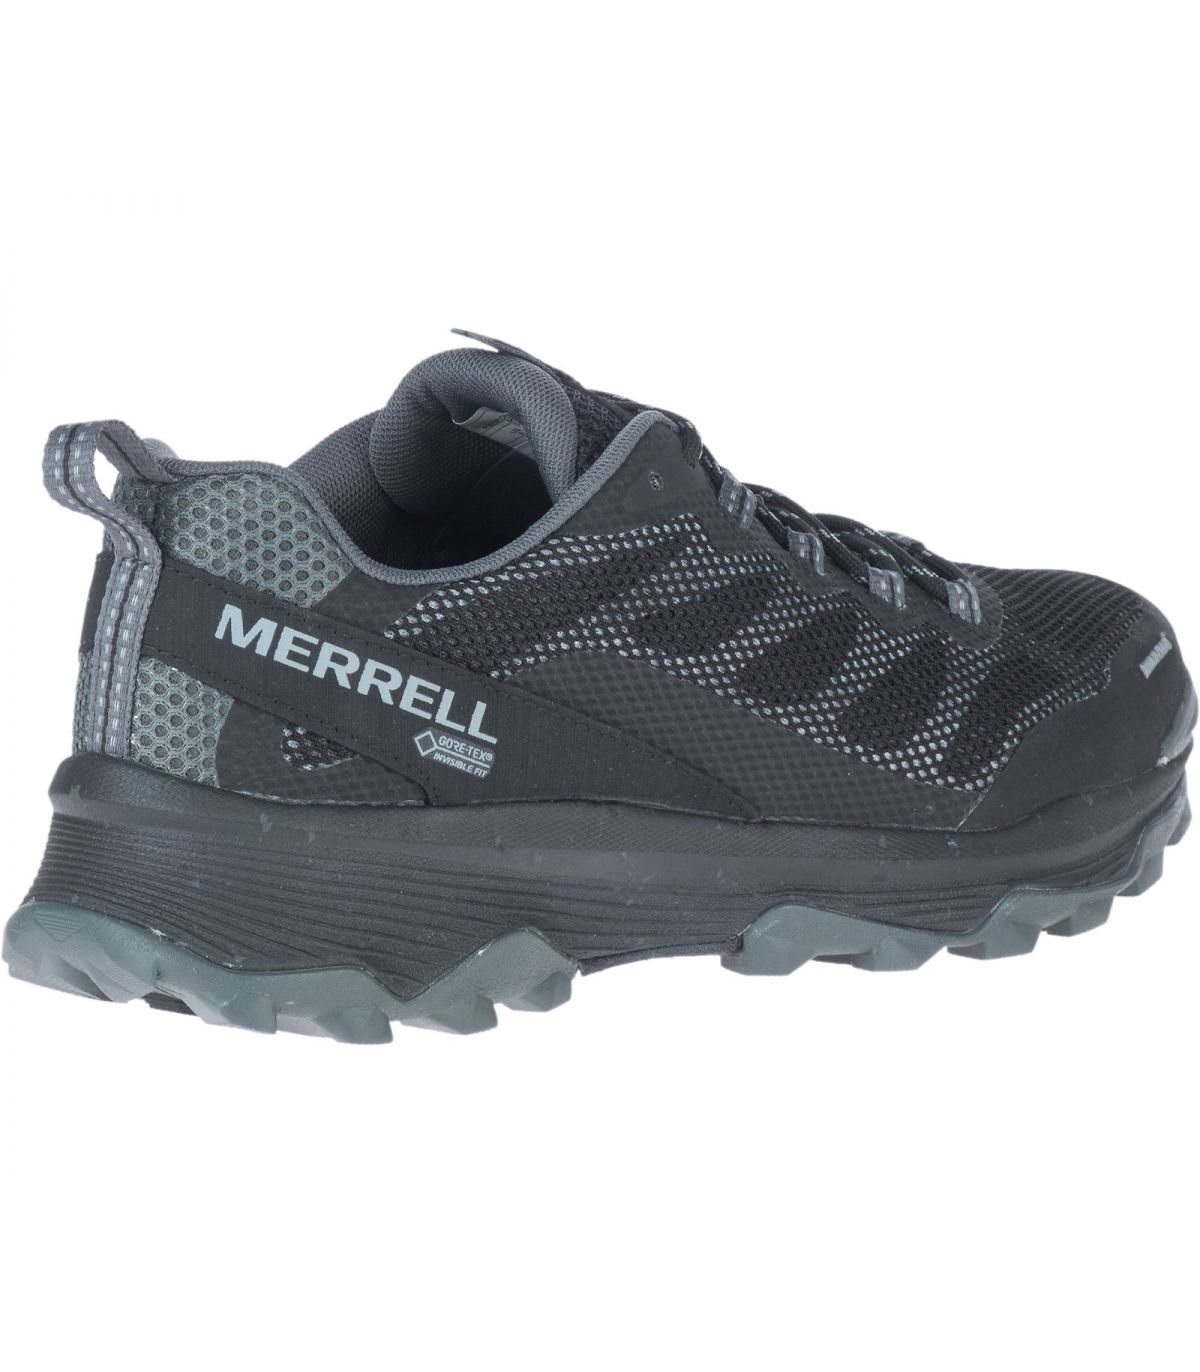 Zapatos Merrell hombre  Compra zapato Merrell hombre